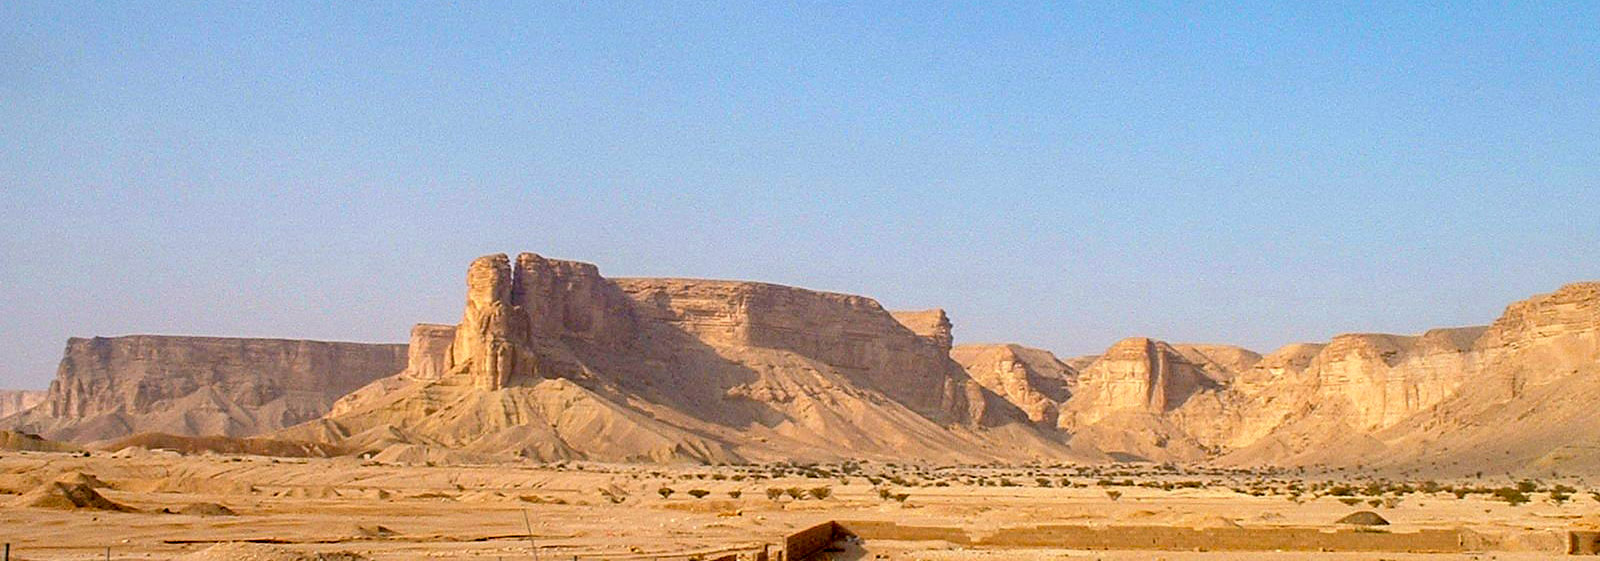 Nejd landscape with the Tuwaiq Escarpment in Saudi Arabia